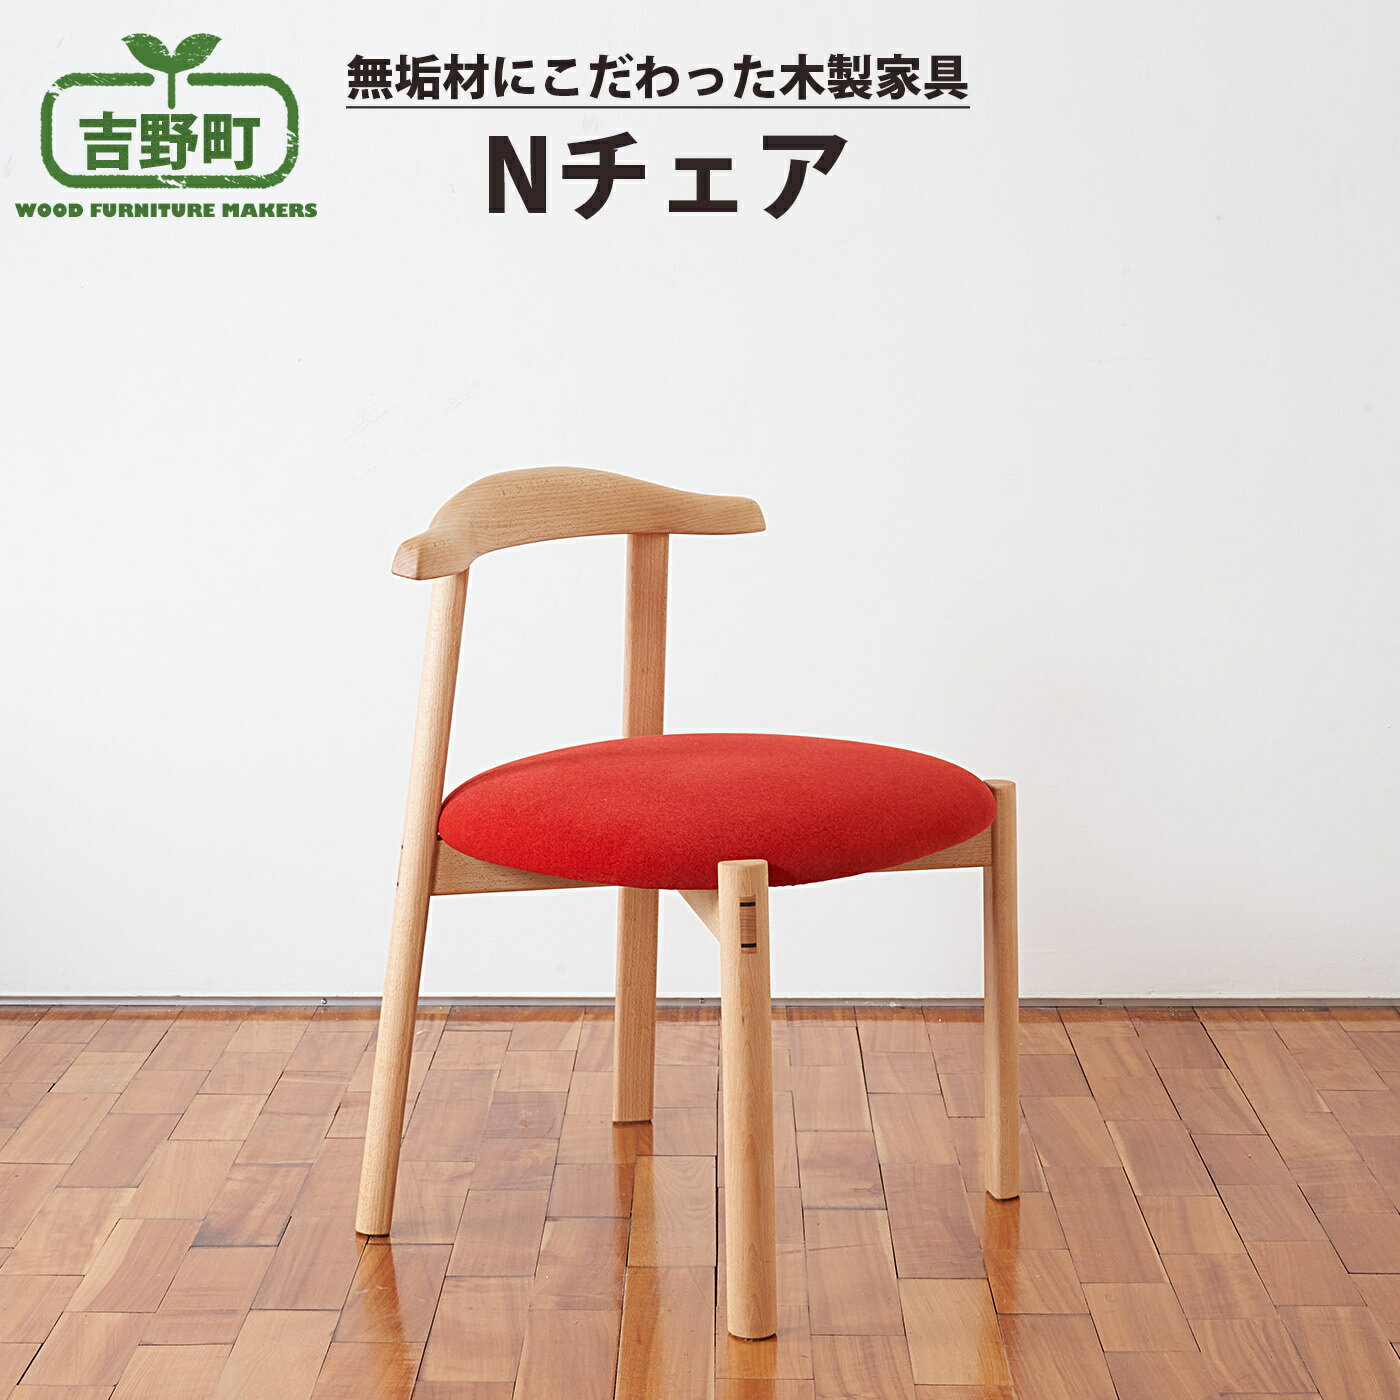 Nチェア 5種 から選べる( 赤・ グレー・ 緑 ・茶 ・木座面)椅子 チェア 奈良県 吉野町 家具